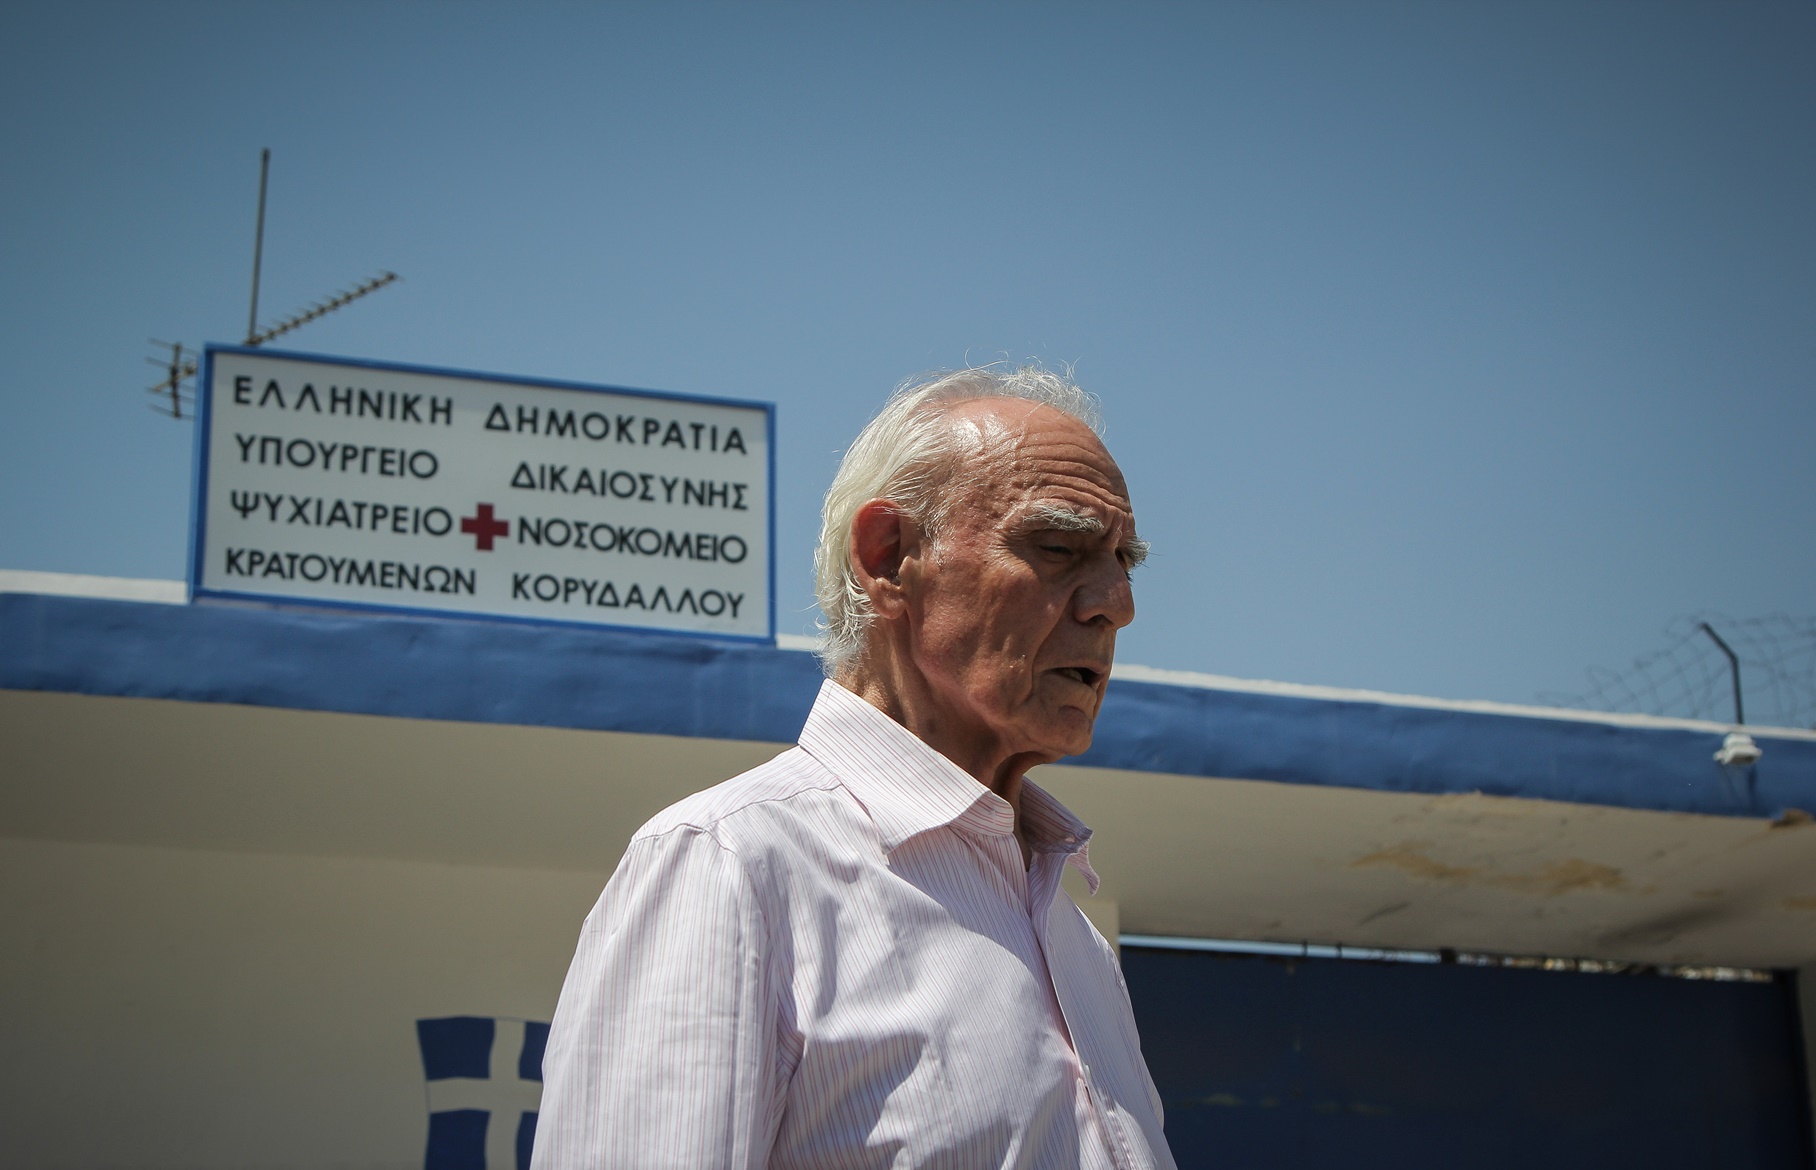 Τσοχατζόπουλος νεκρός: Ο πρώην υπουργός του ΠΑΣΟΚ έπαθε ανακοπή καρδιάς 